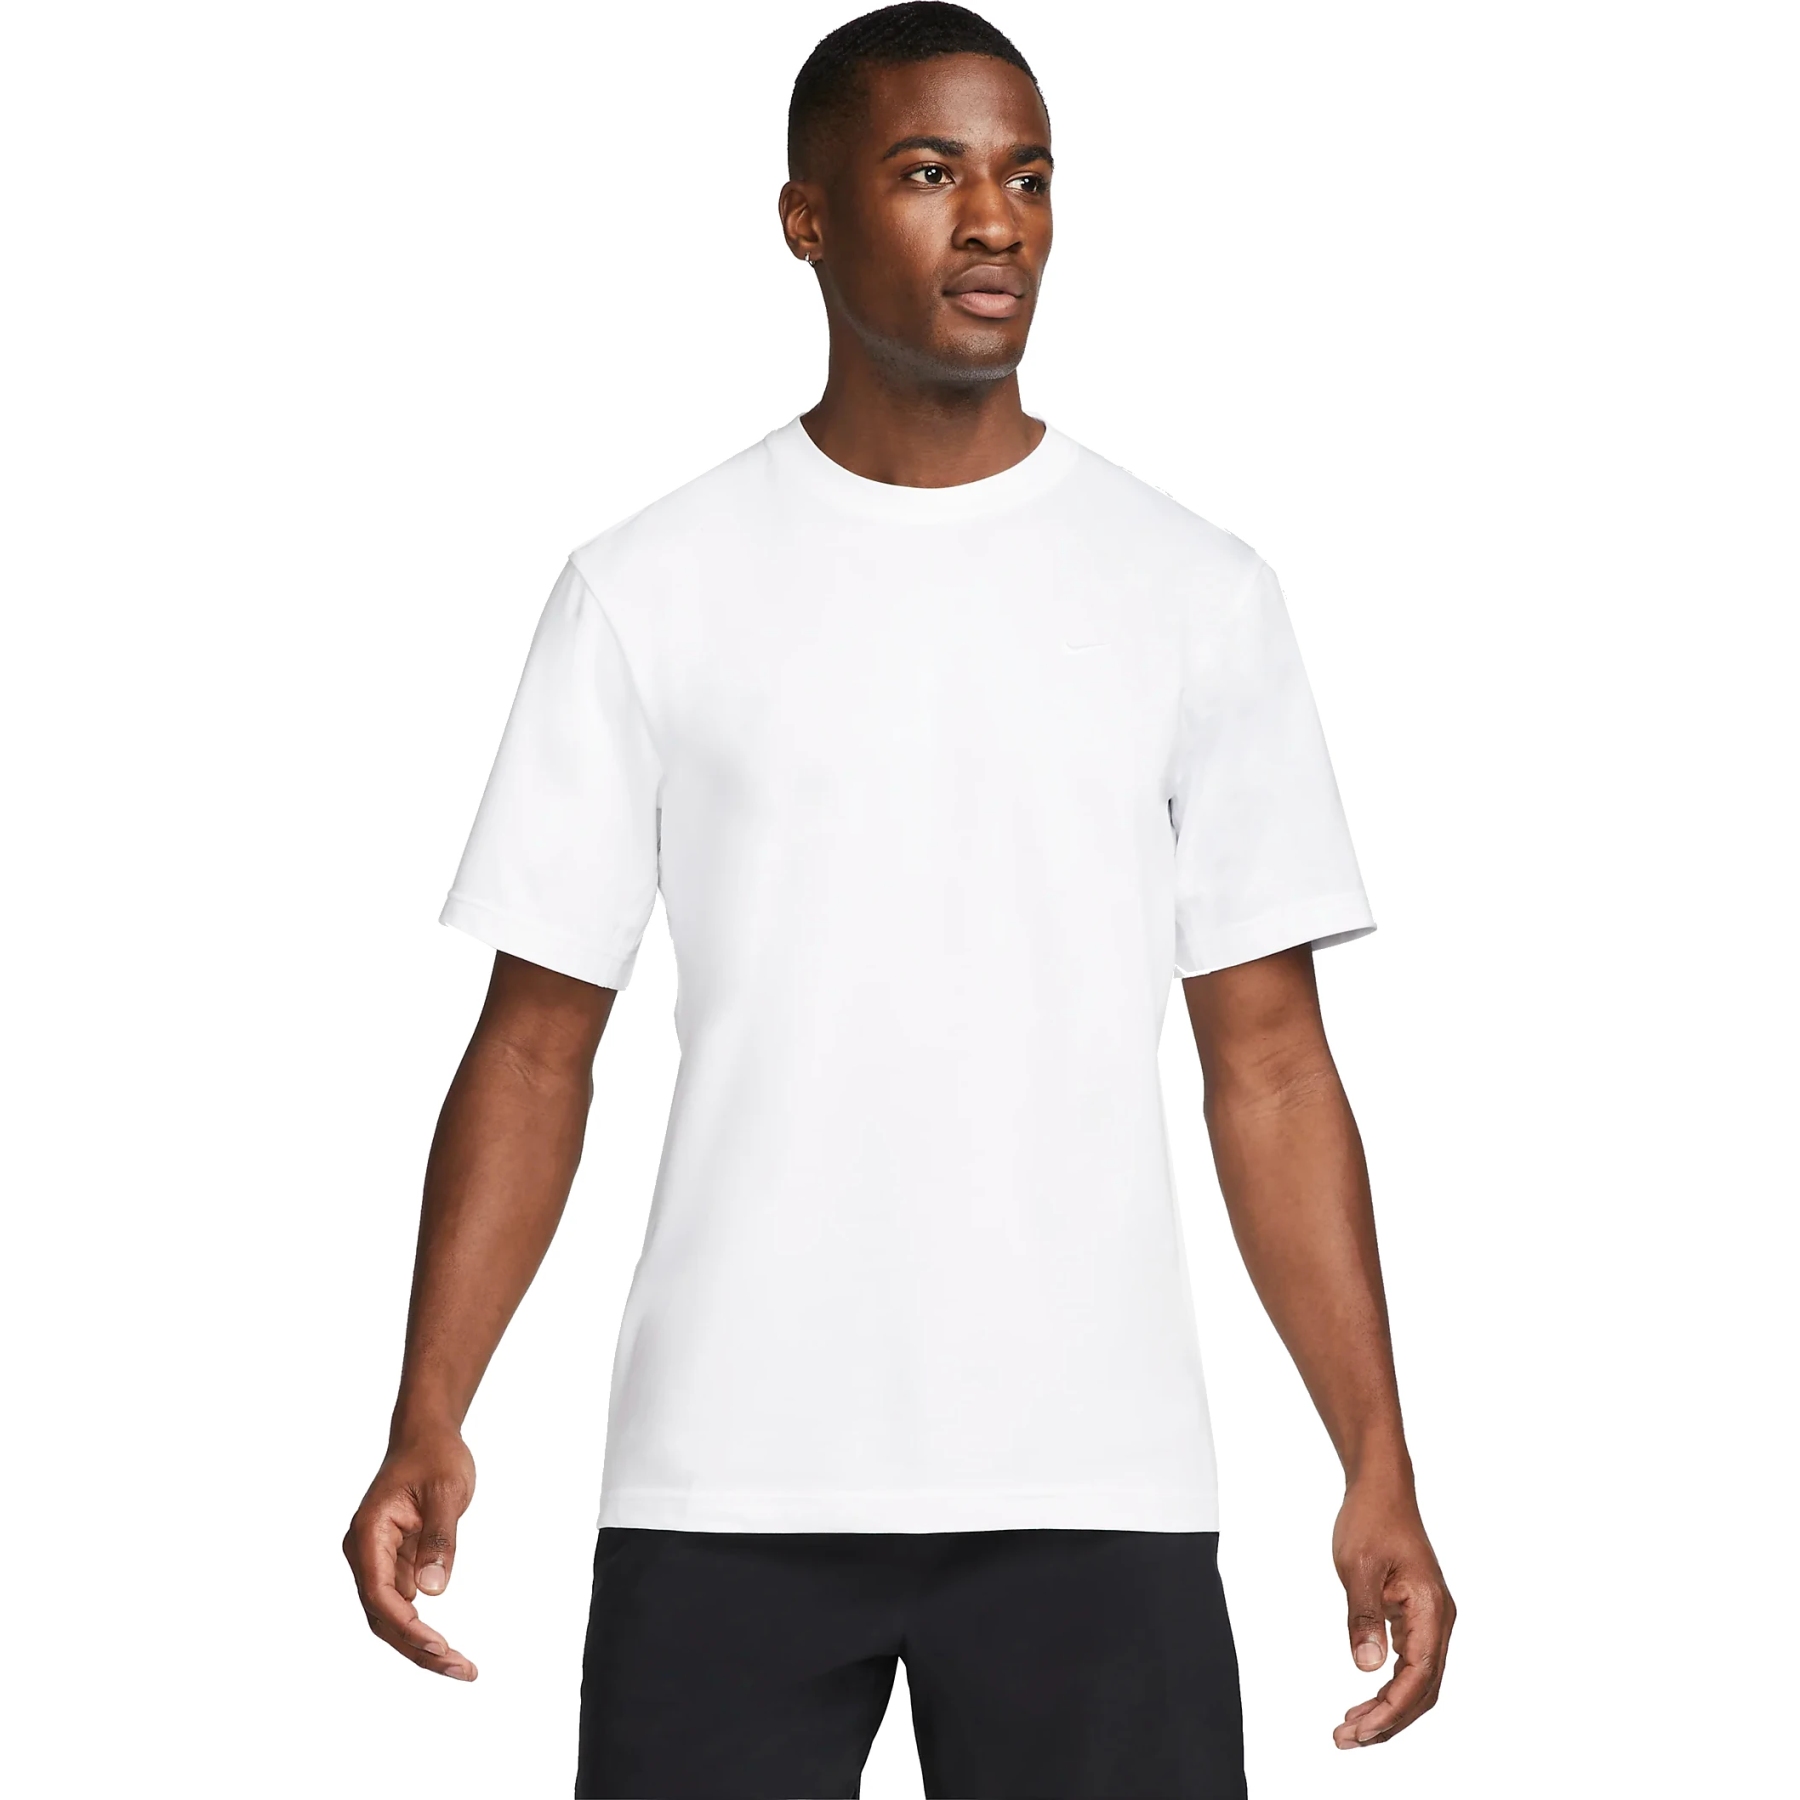 Produktbild von Nike Dri-FIT Primary Fitness-T-Shirt für Herren - weiß/weiß DV9831-100